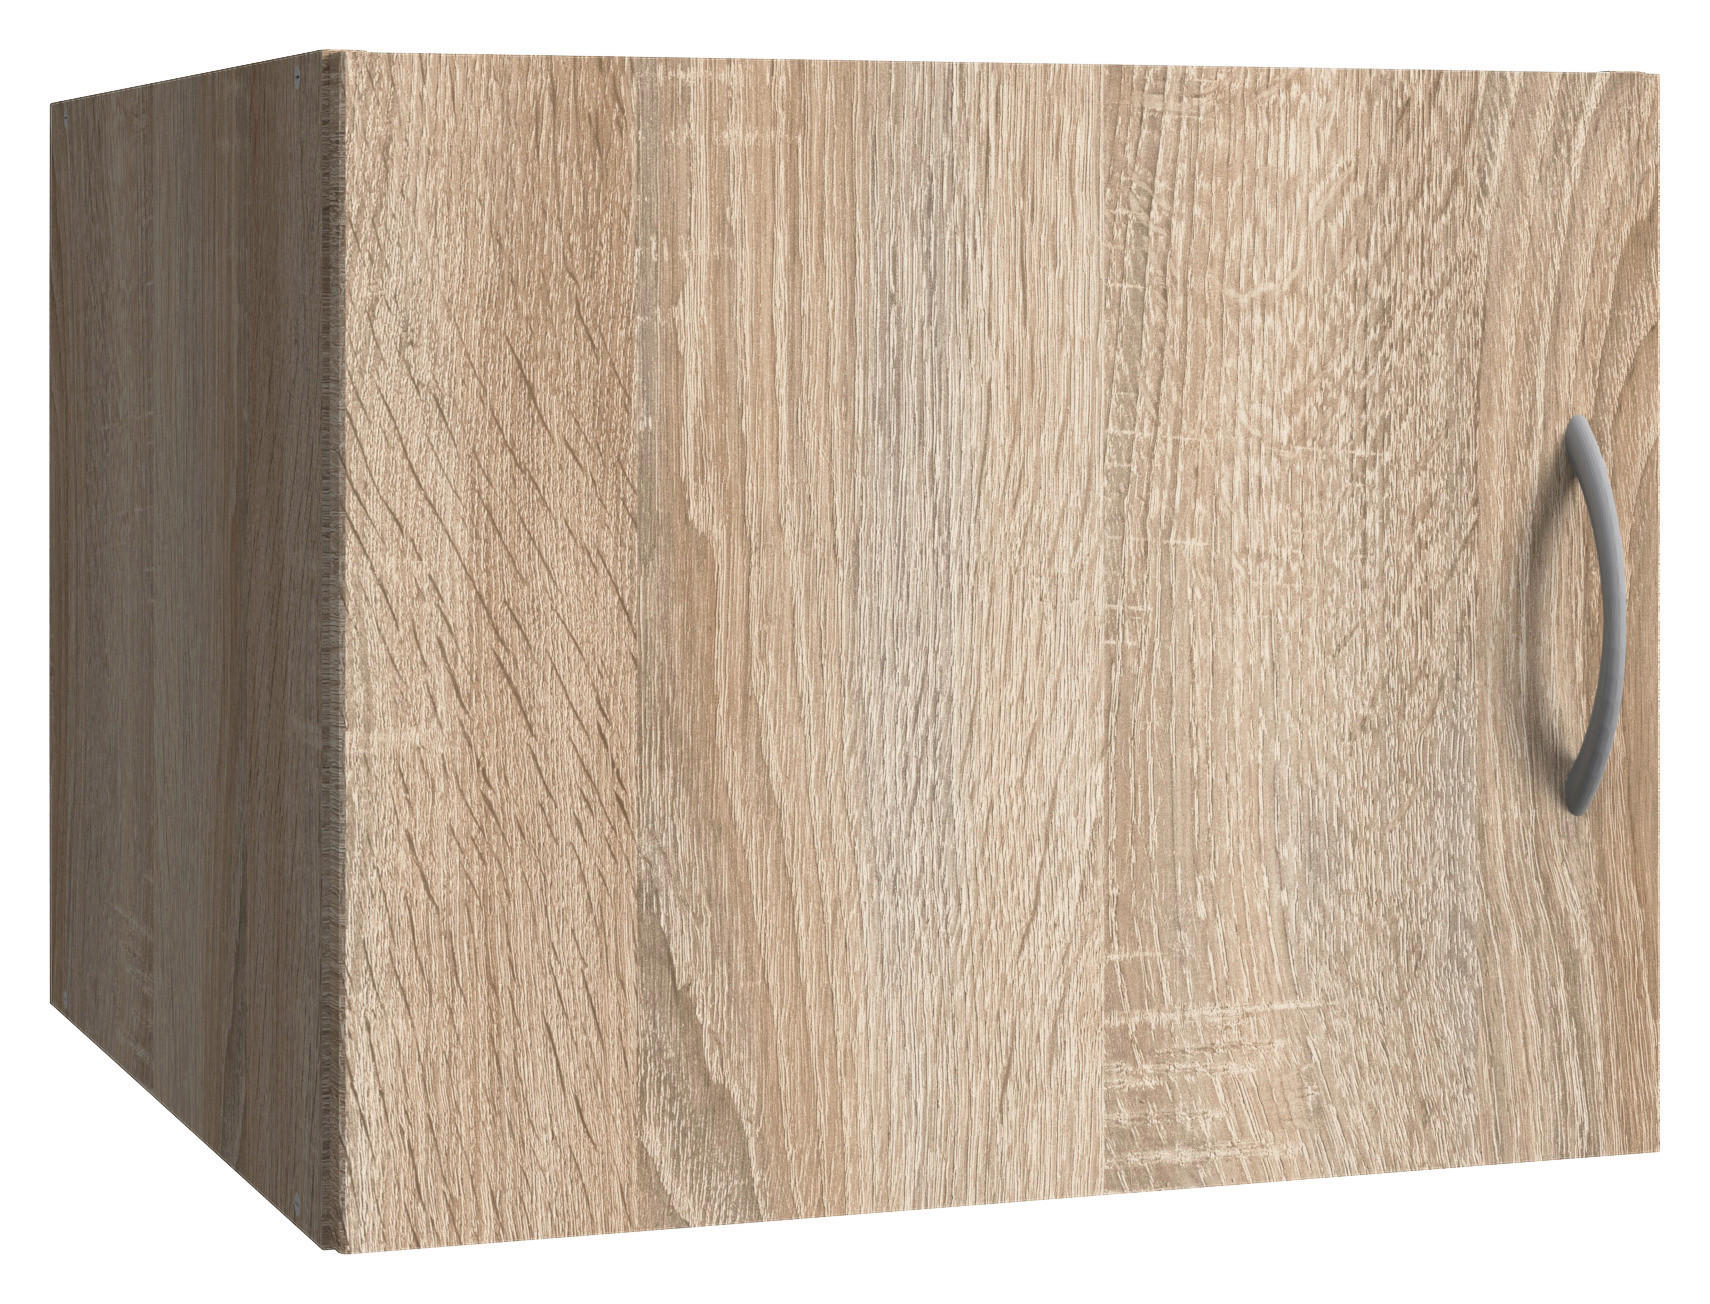 NADSTAVEC NA SKRIŇU, 50/40/40 cm - farby duba/farby hliníka, Konventionell, kompozitné drevo/plast (50/40/40cm) - Xora